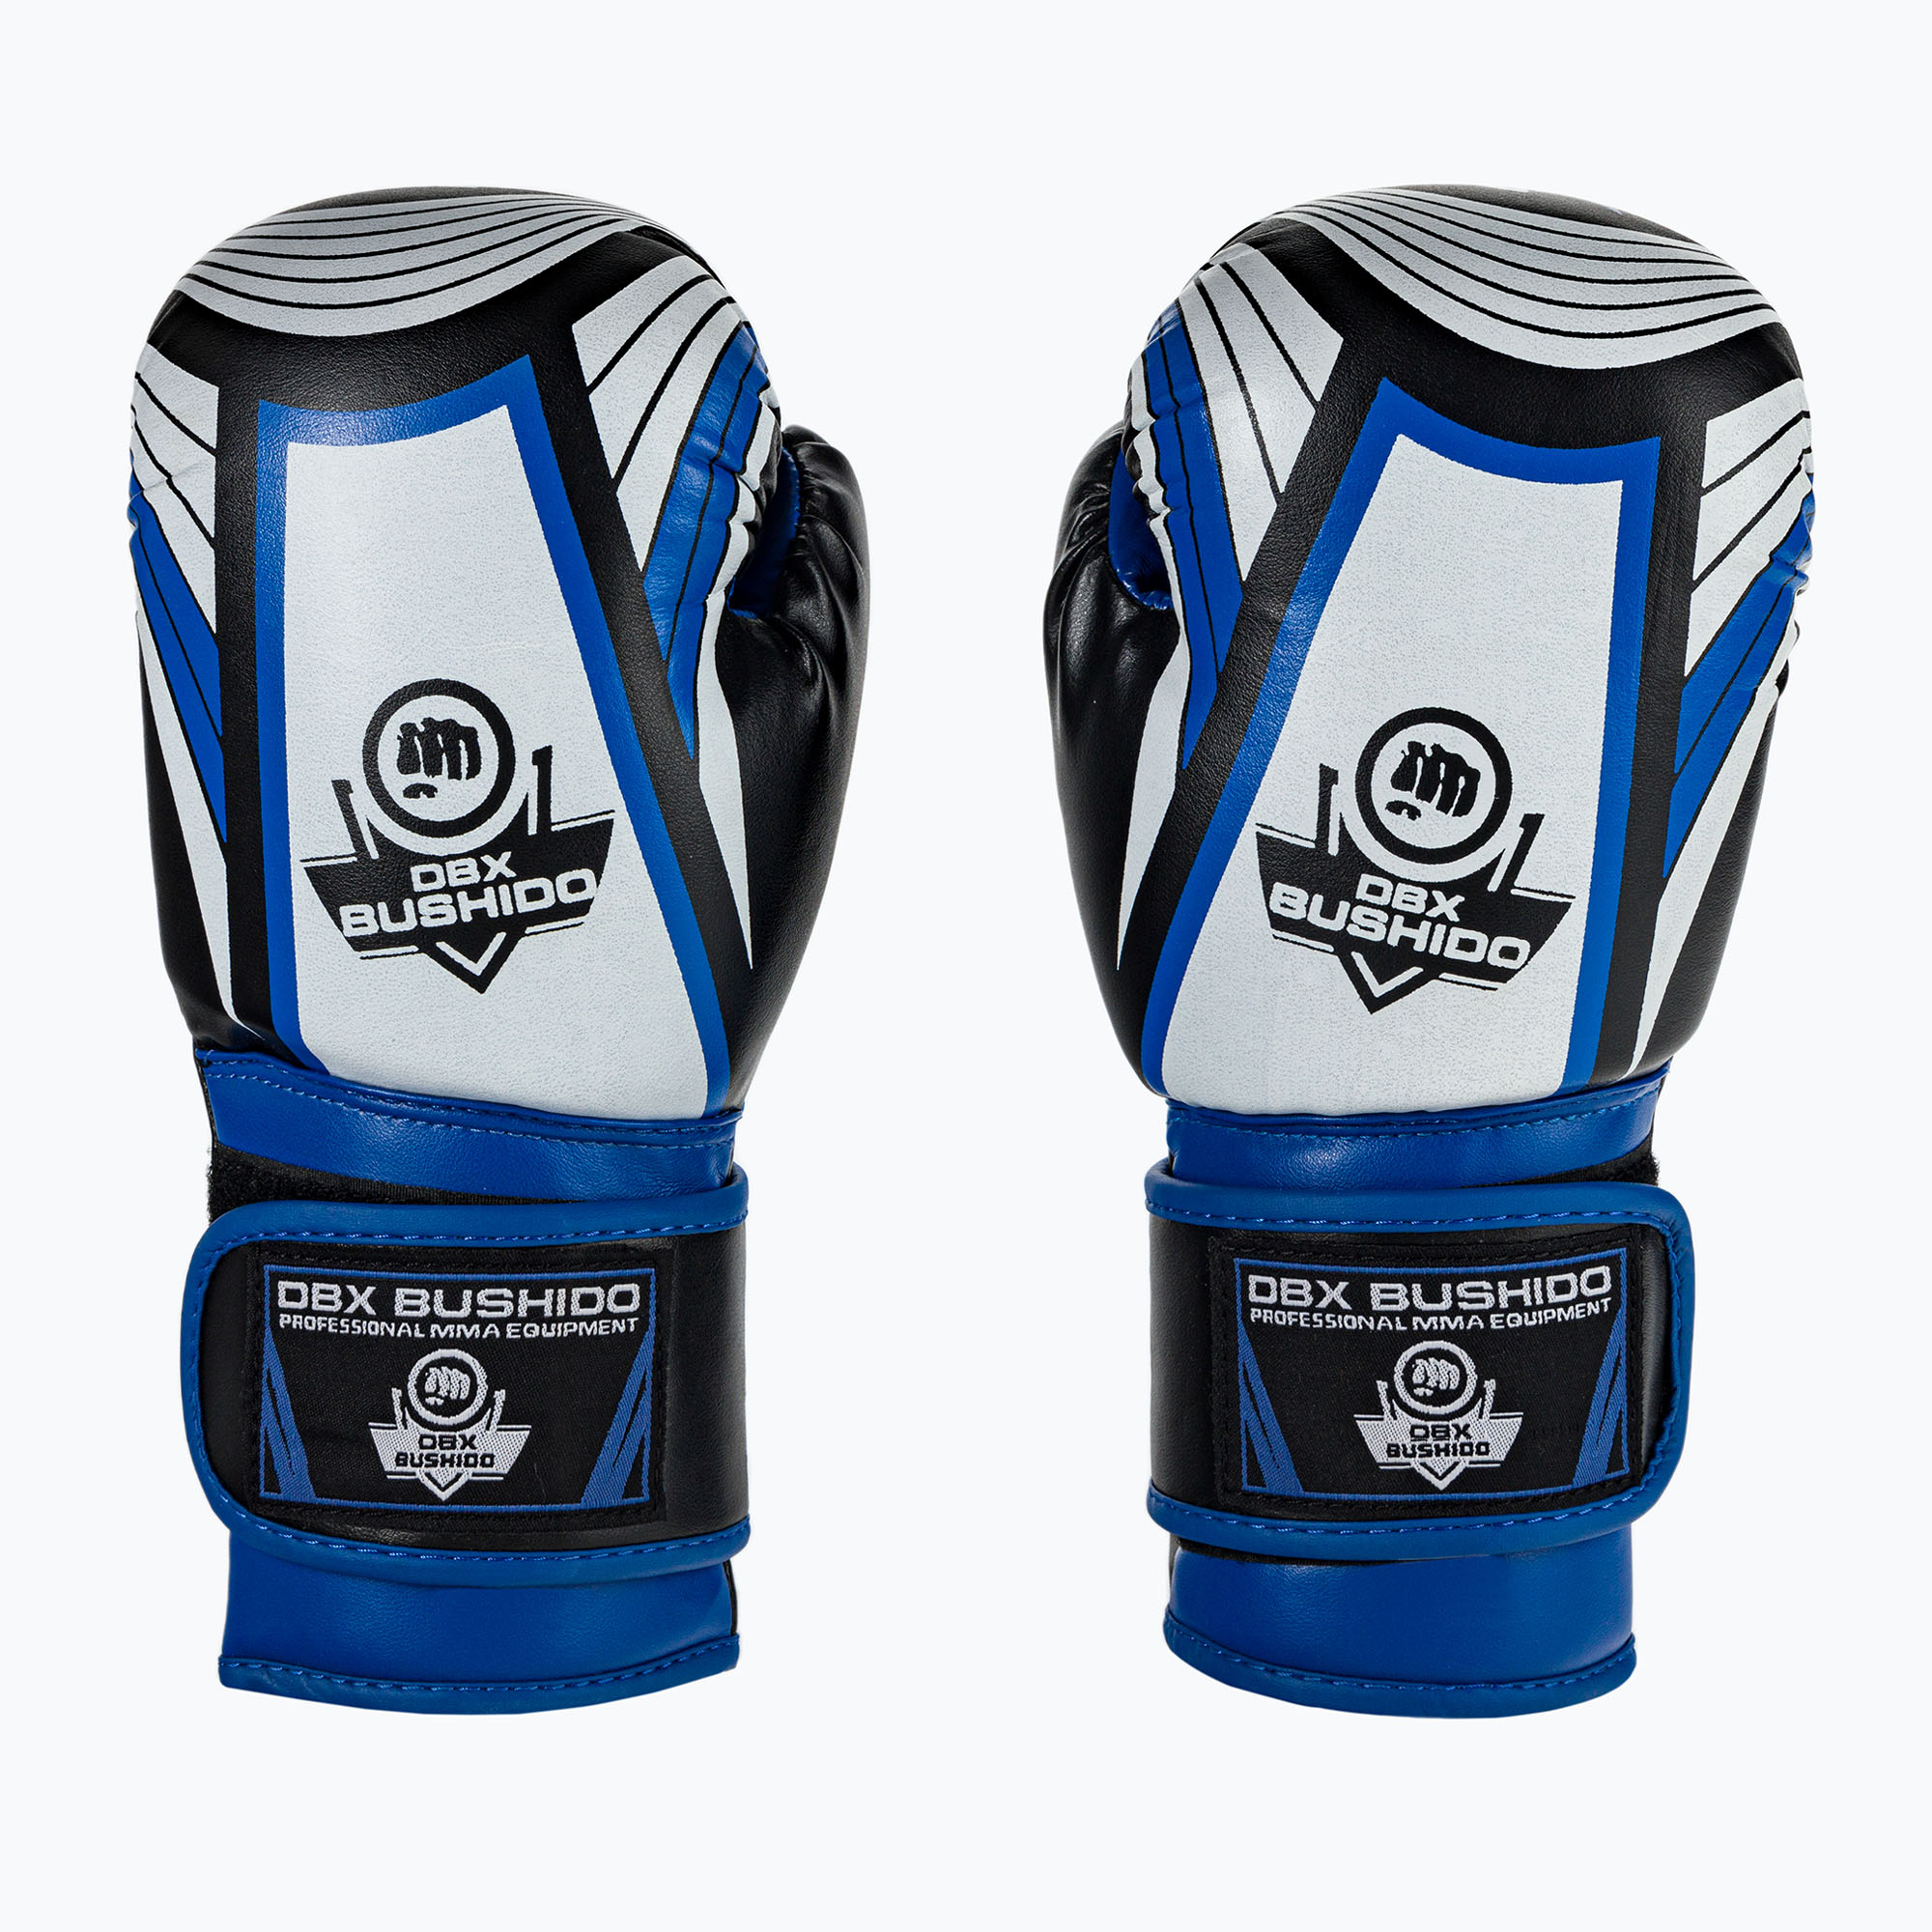 Bushido mănuși de box pentru copii ARB-407v1 albastru